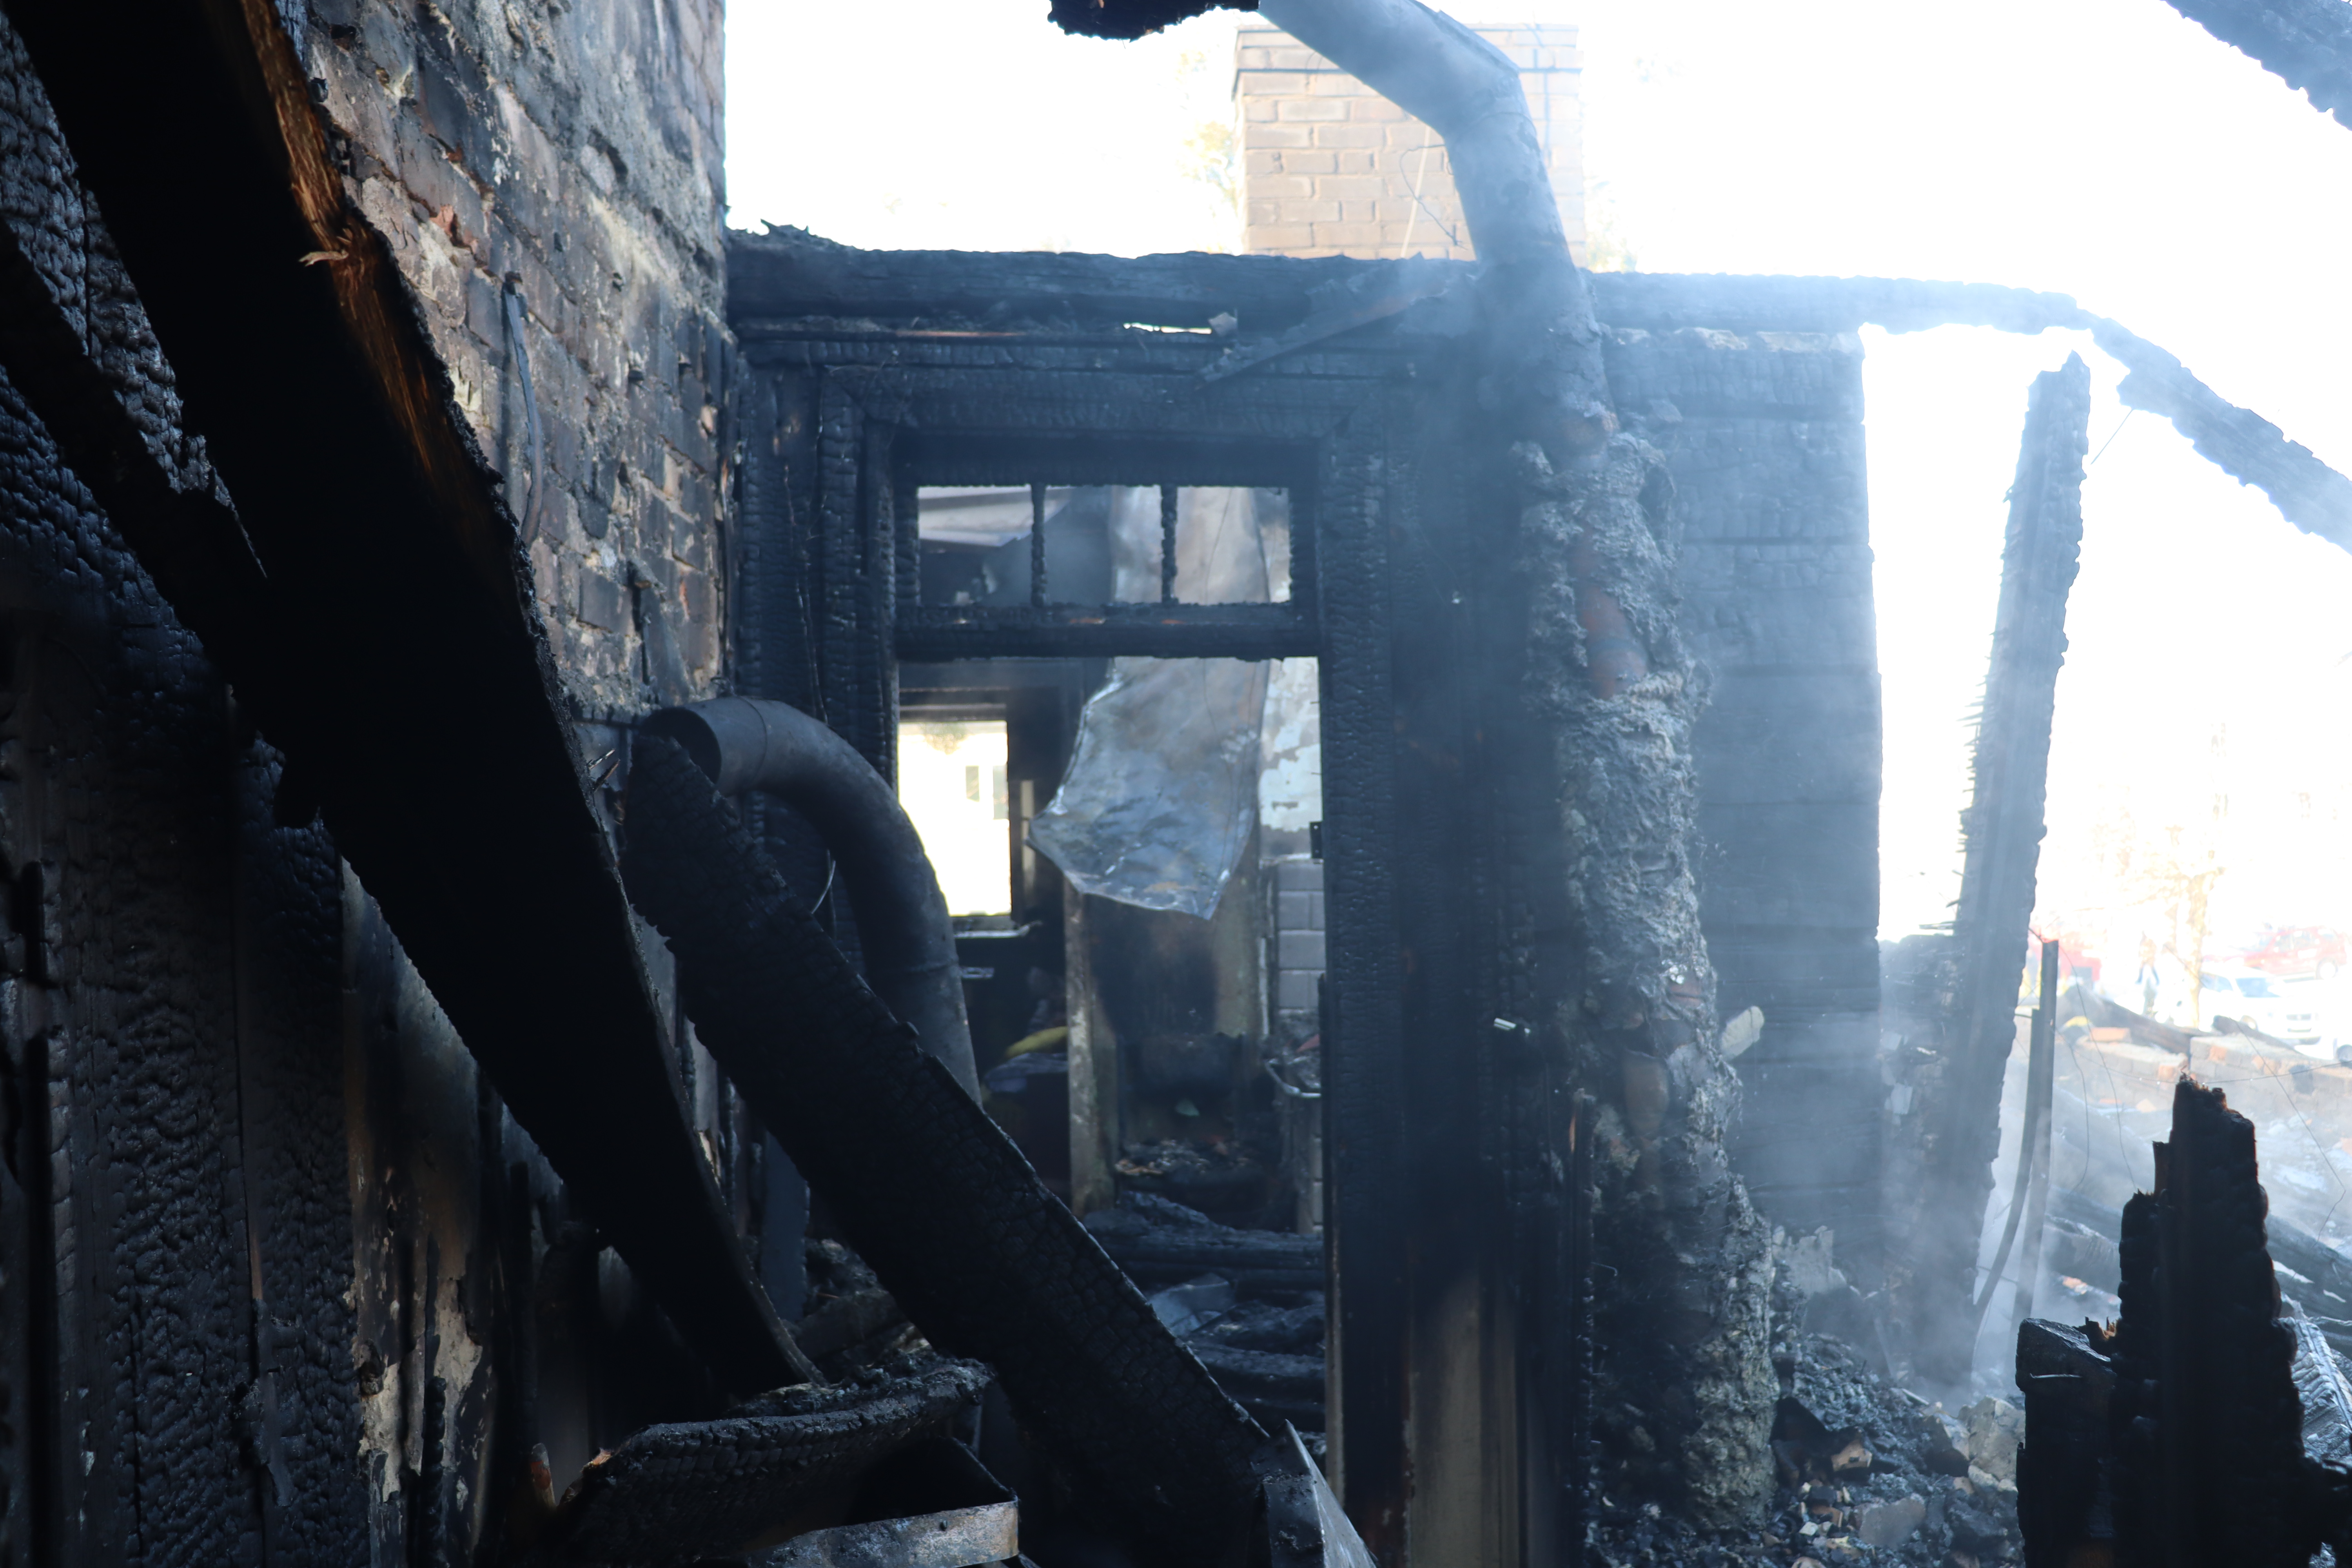 22 zastępy straży pożarnej w akcji gaszenia pożaru budynku mieszkalnego. Straty są ogromne (zdjęcia)